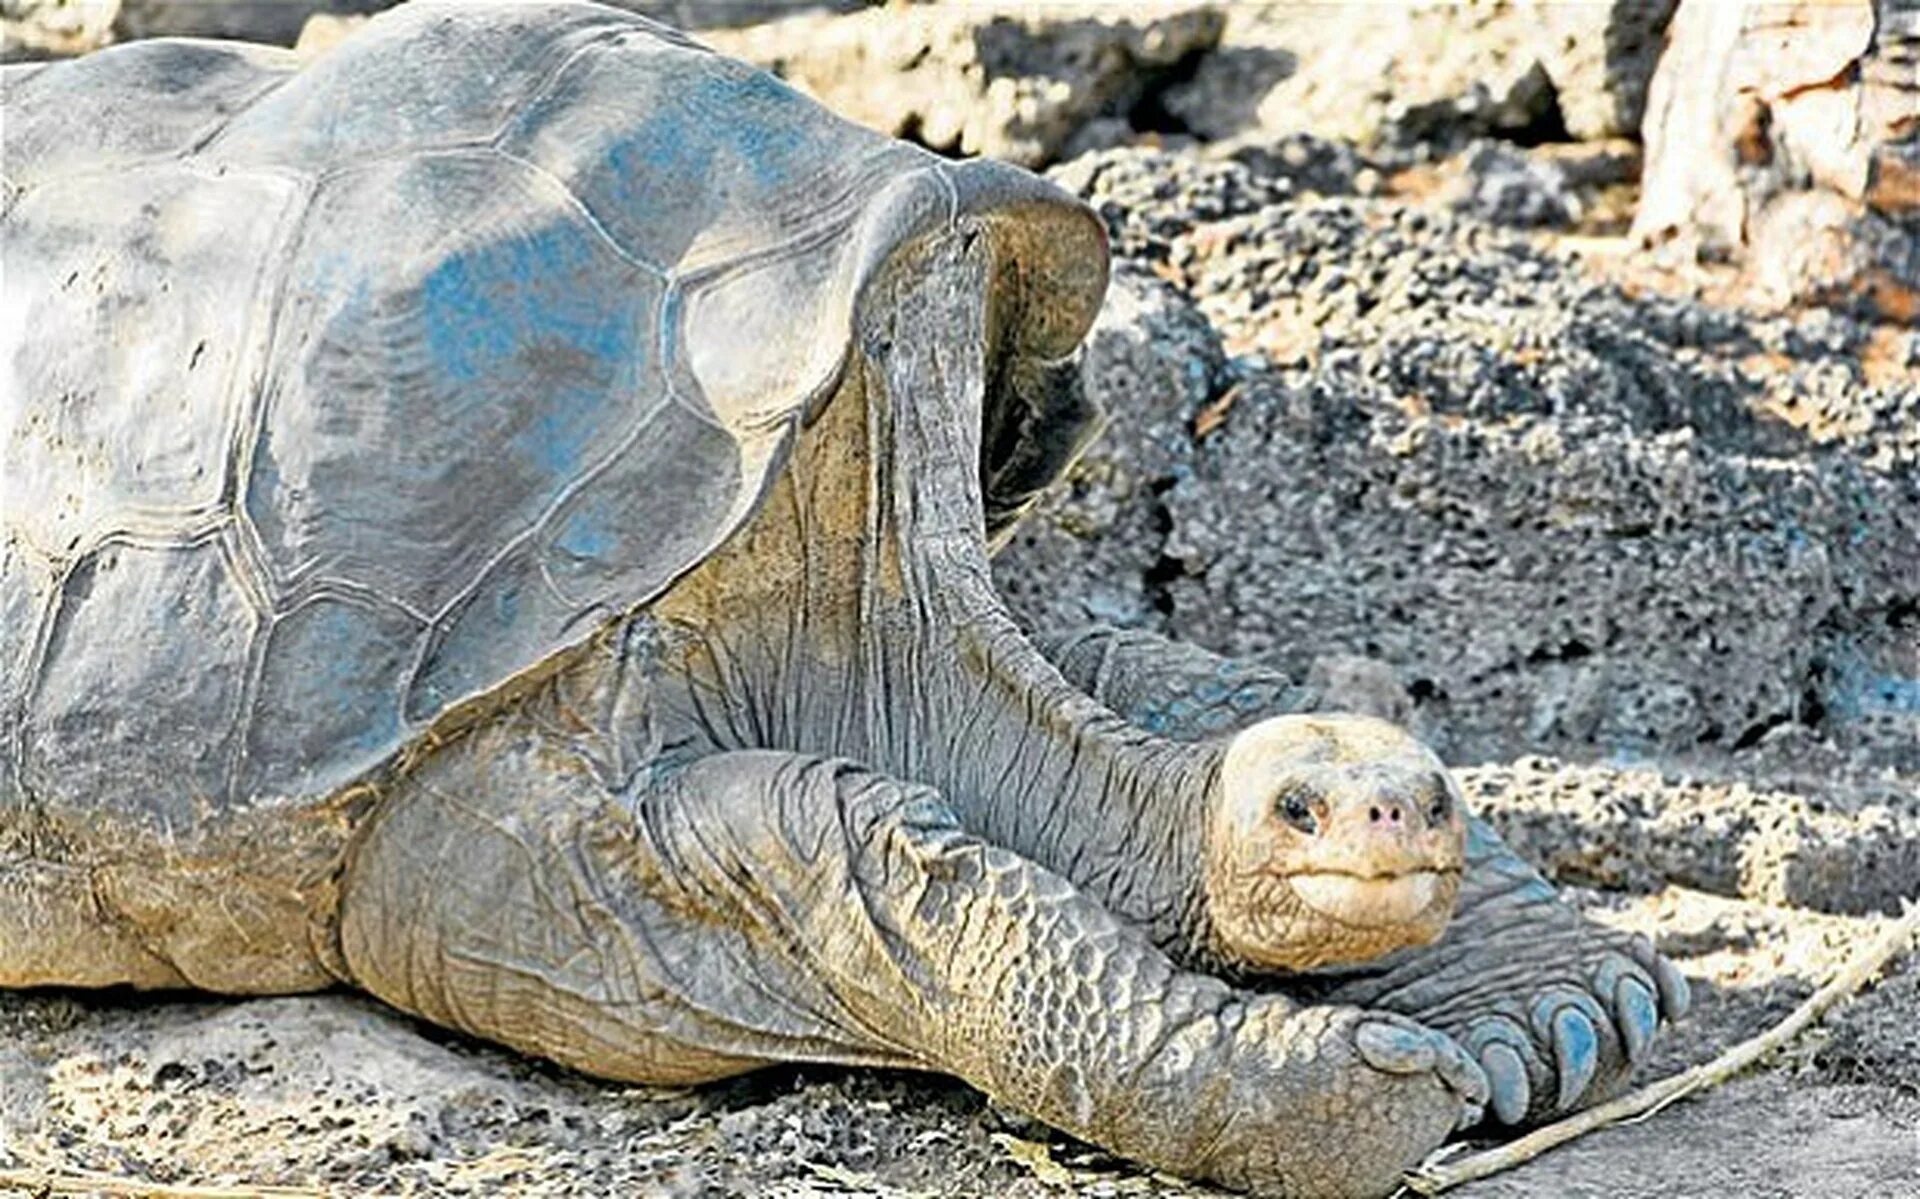 Галапагосская черепаха Джордж. Абингдонская слоновая черепаха. Абингдонская слоновая черепаха одинокий Джордж. Галапагосская черепаха одинокий Джордж. Абингдонские слоновые черепахи